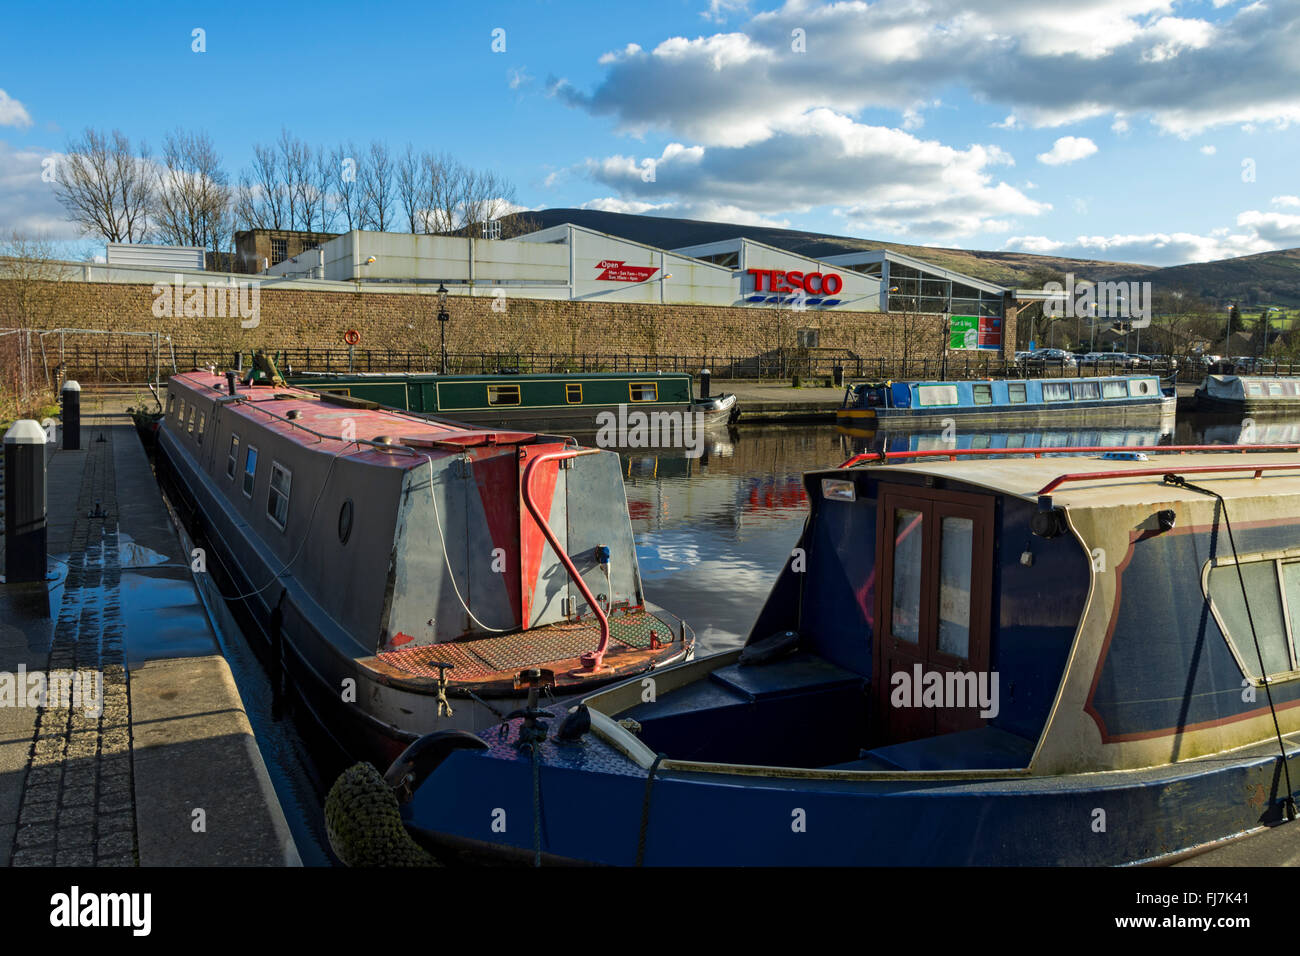 Tesco Speichern von Französinnen Marina auf dem Huddersfield schmaler Kanal am Greenfield, Saddleworth, größere Manchester, UK. Stockfoto